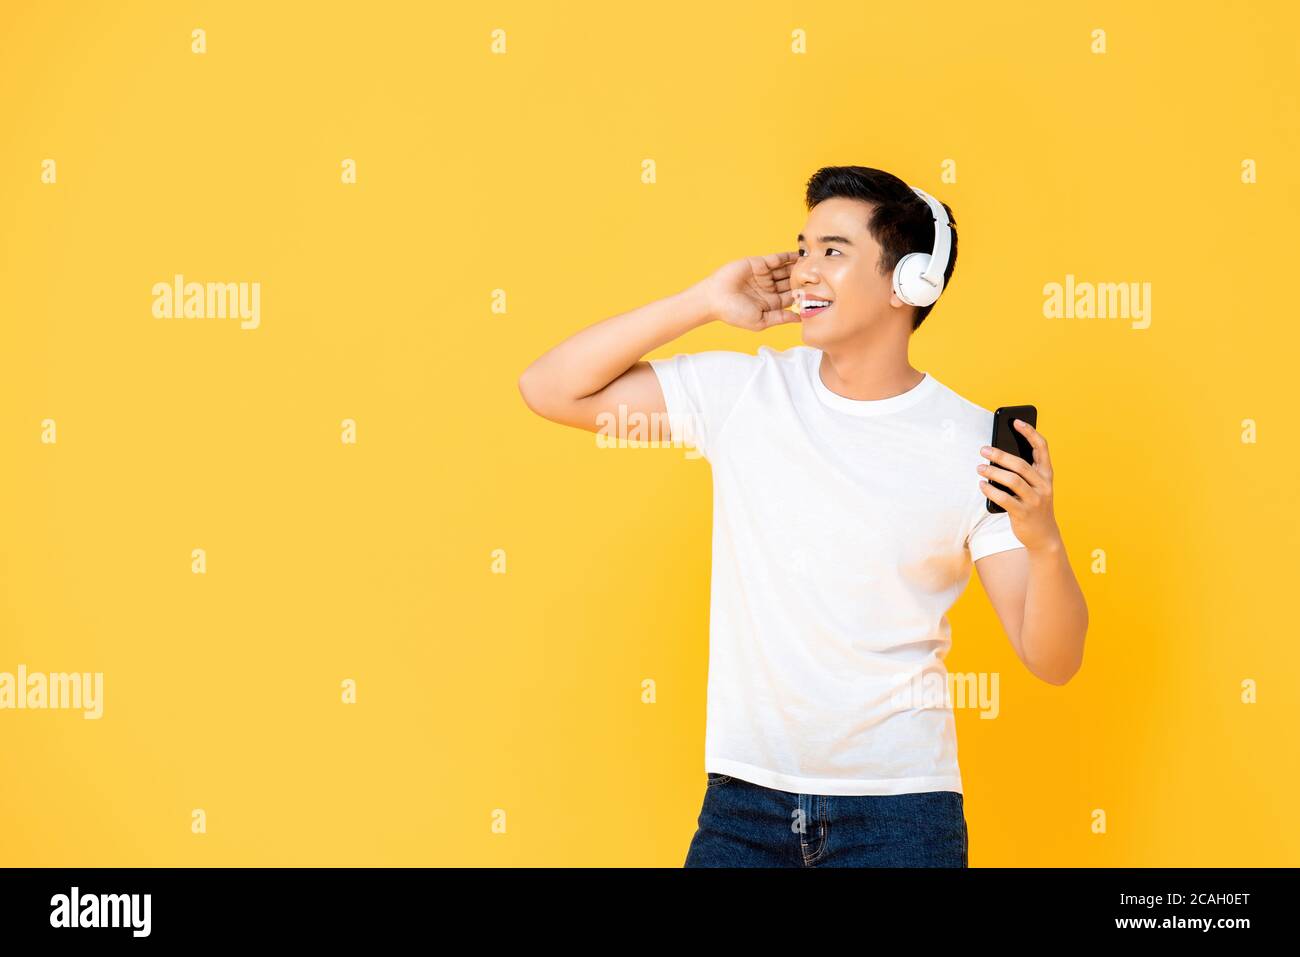 Jeune homme asiatique élégant portant un casque pour écouter de la musique depuis un smartphone sur fond jaune Banque D'Images